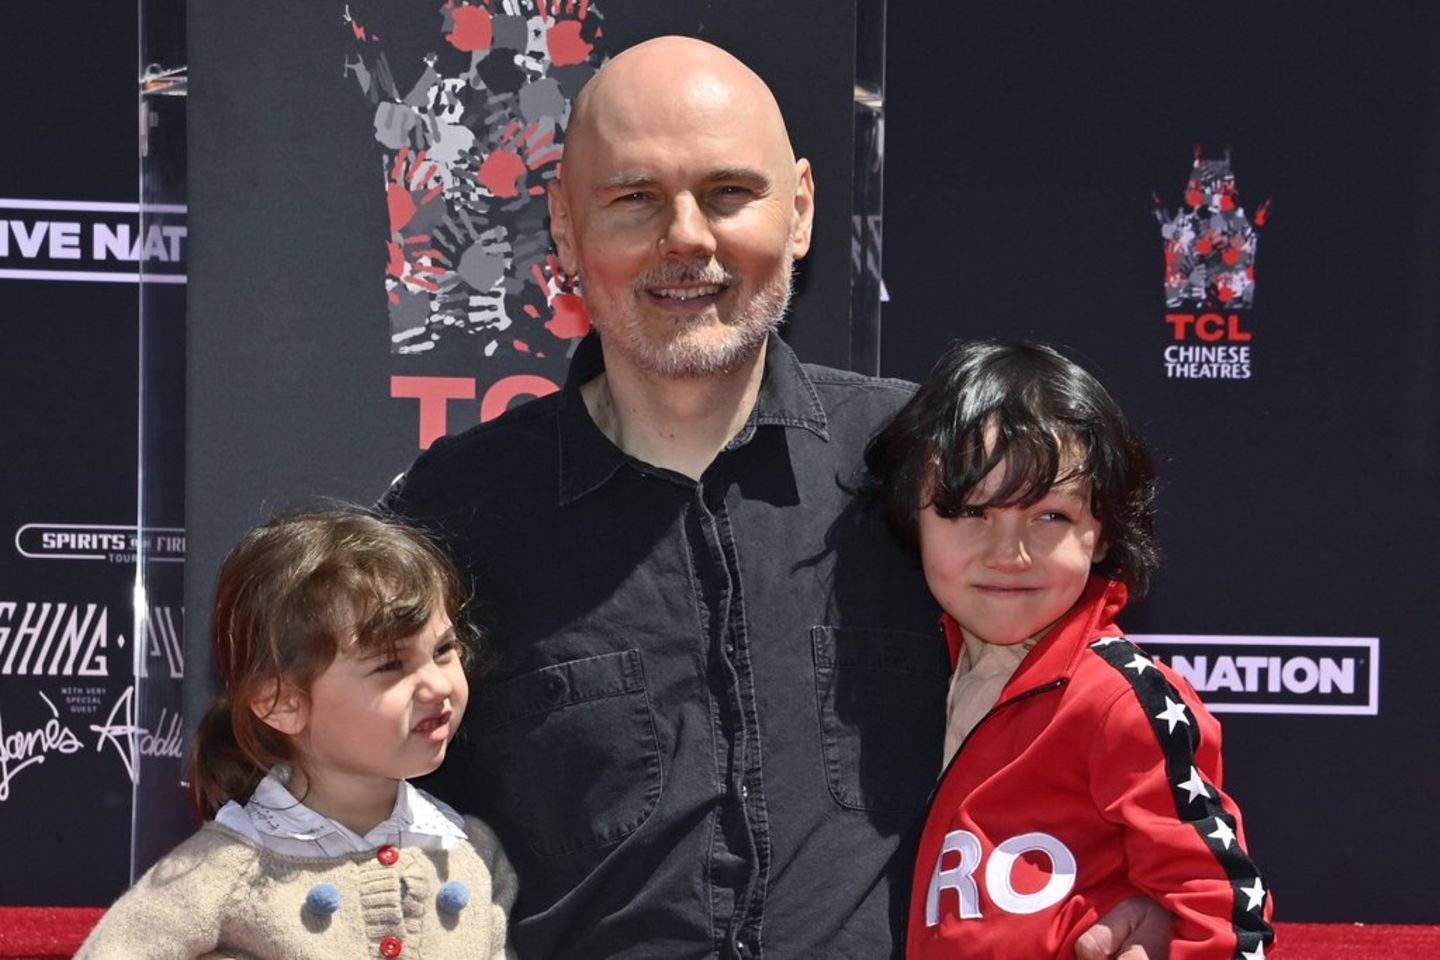 Billy Corgan 2022 mit seinen Kindern Philomena und Augustus. Jetzt ist er mit deren Mutter verheiratet.